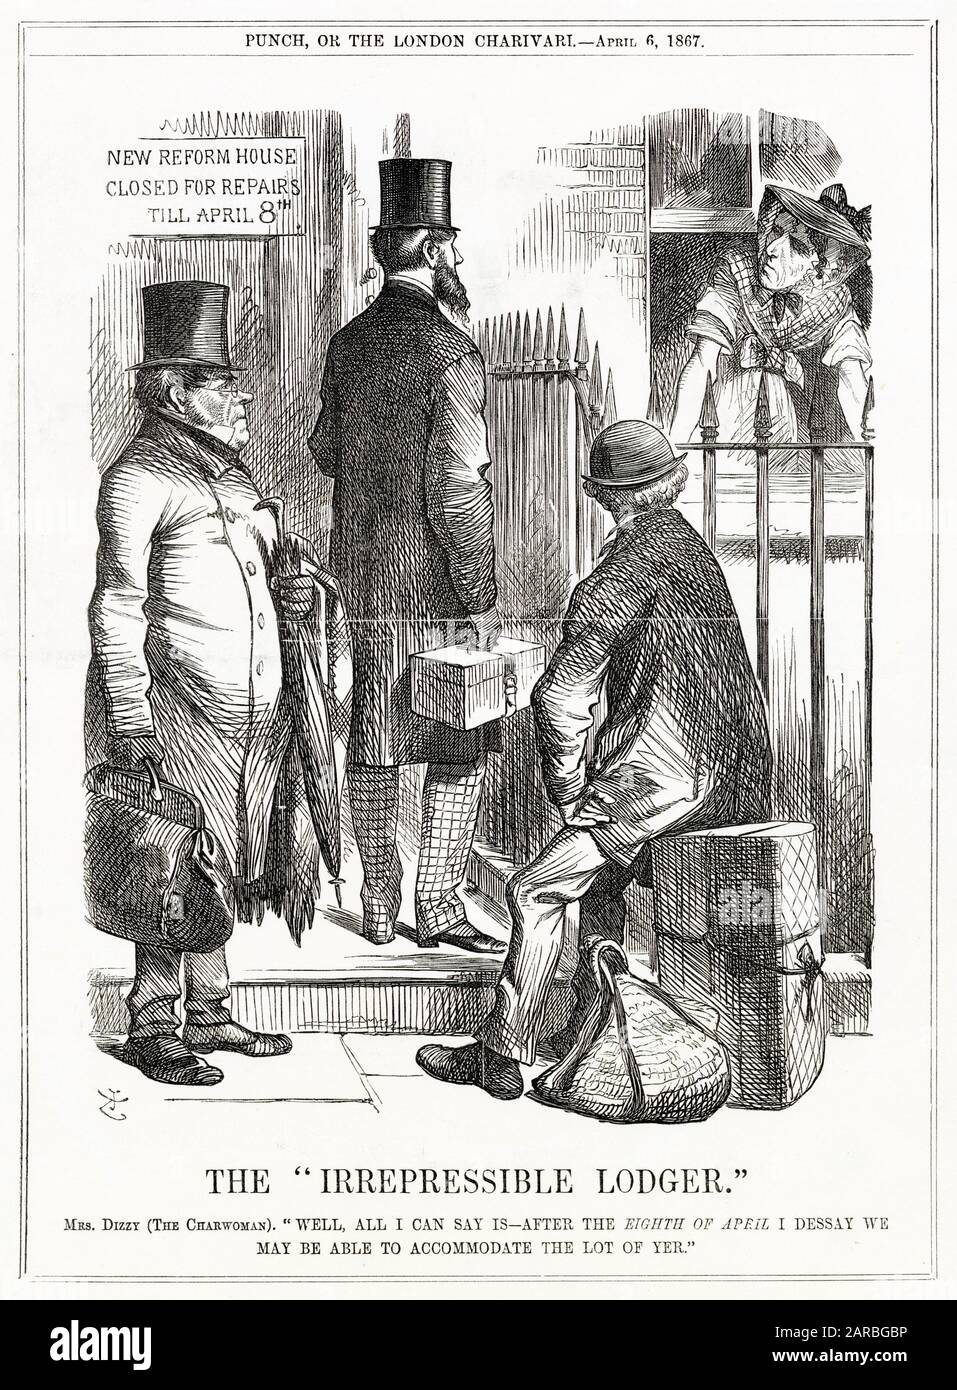 Cartoon, el Lodger Irreprimible -- un comentario satírico sobre el acuerdo de Disraeli para incluir a los huéspedes en su proyecto de Ley de Reforma, declarándose a sí mismo el Padre de la Franquise de Lodger. Él es visto aquí como una charwoman, hablando a través de una ventana a tres lodgers prospectivos. Fecha: 1867 Foto de stock